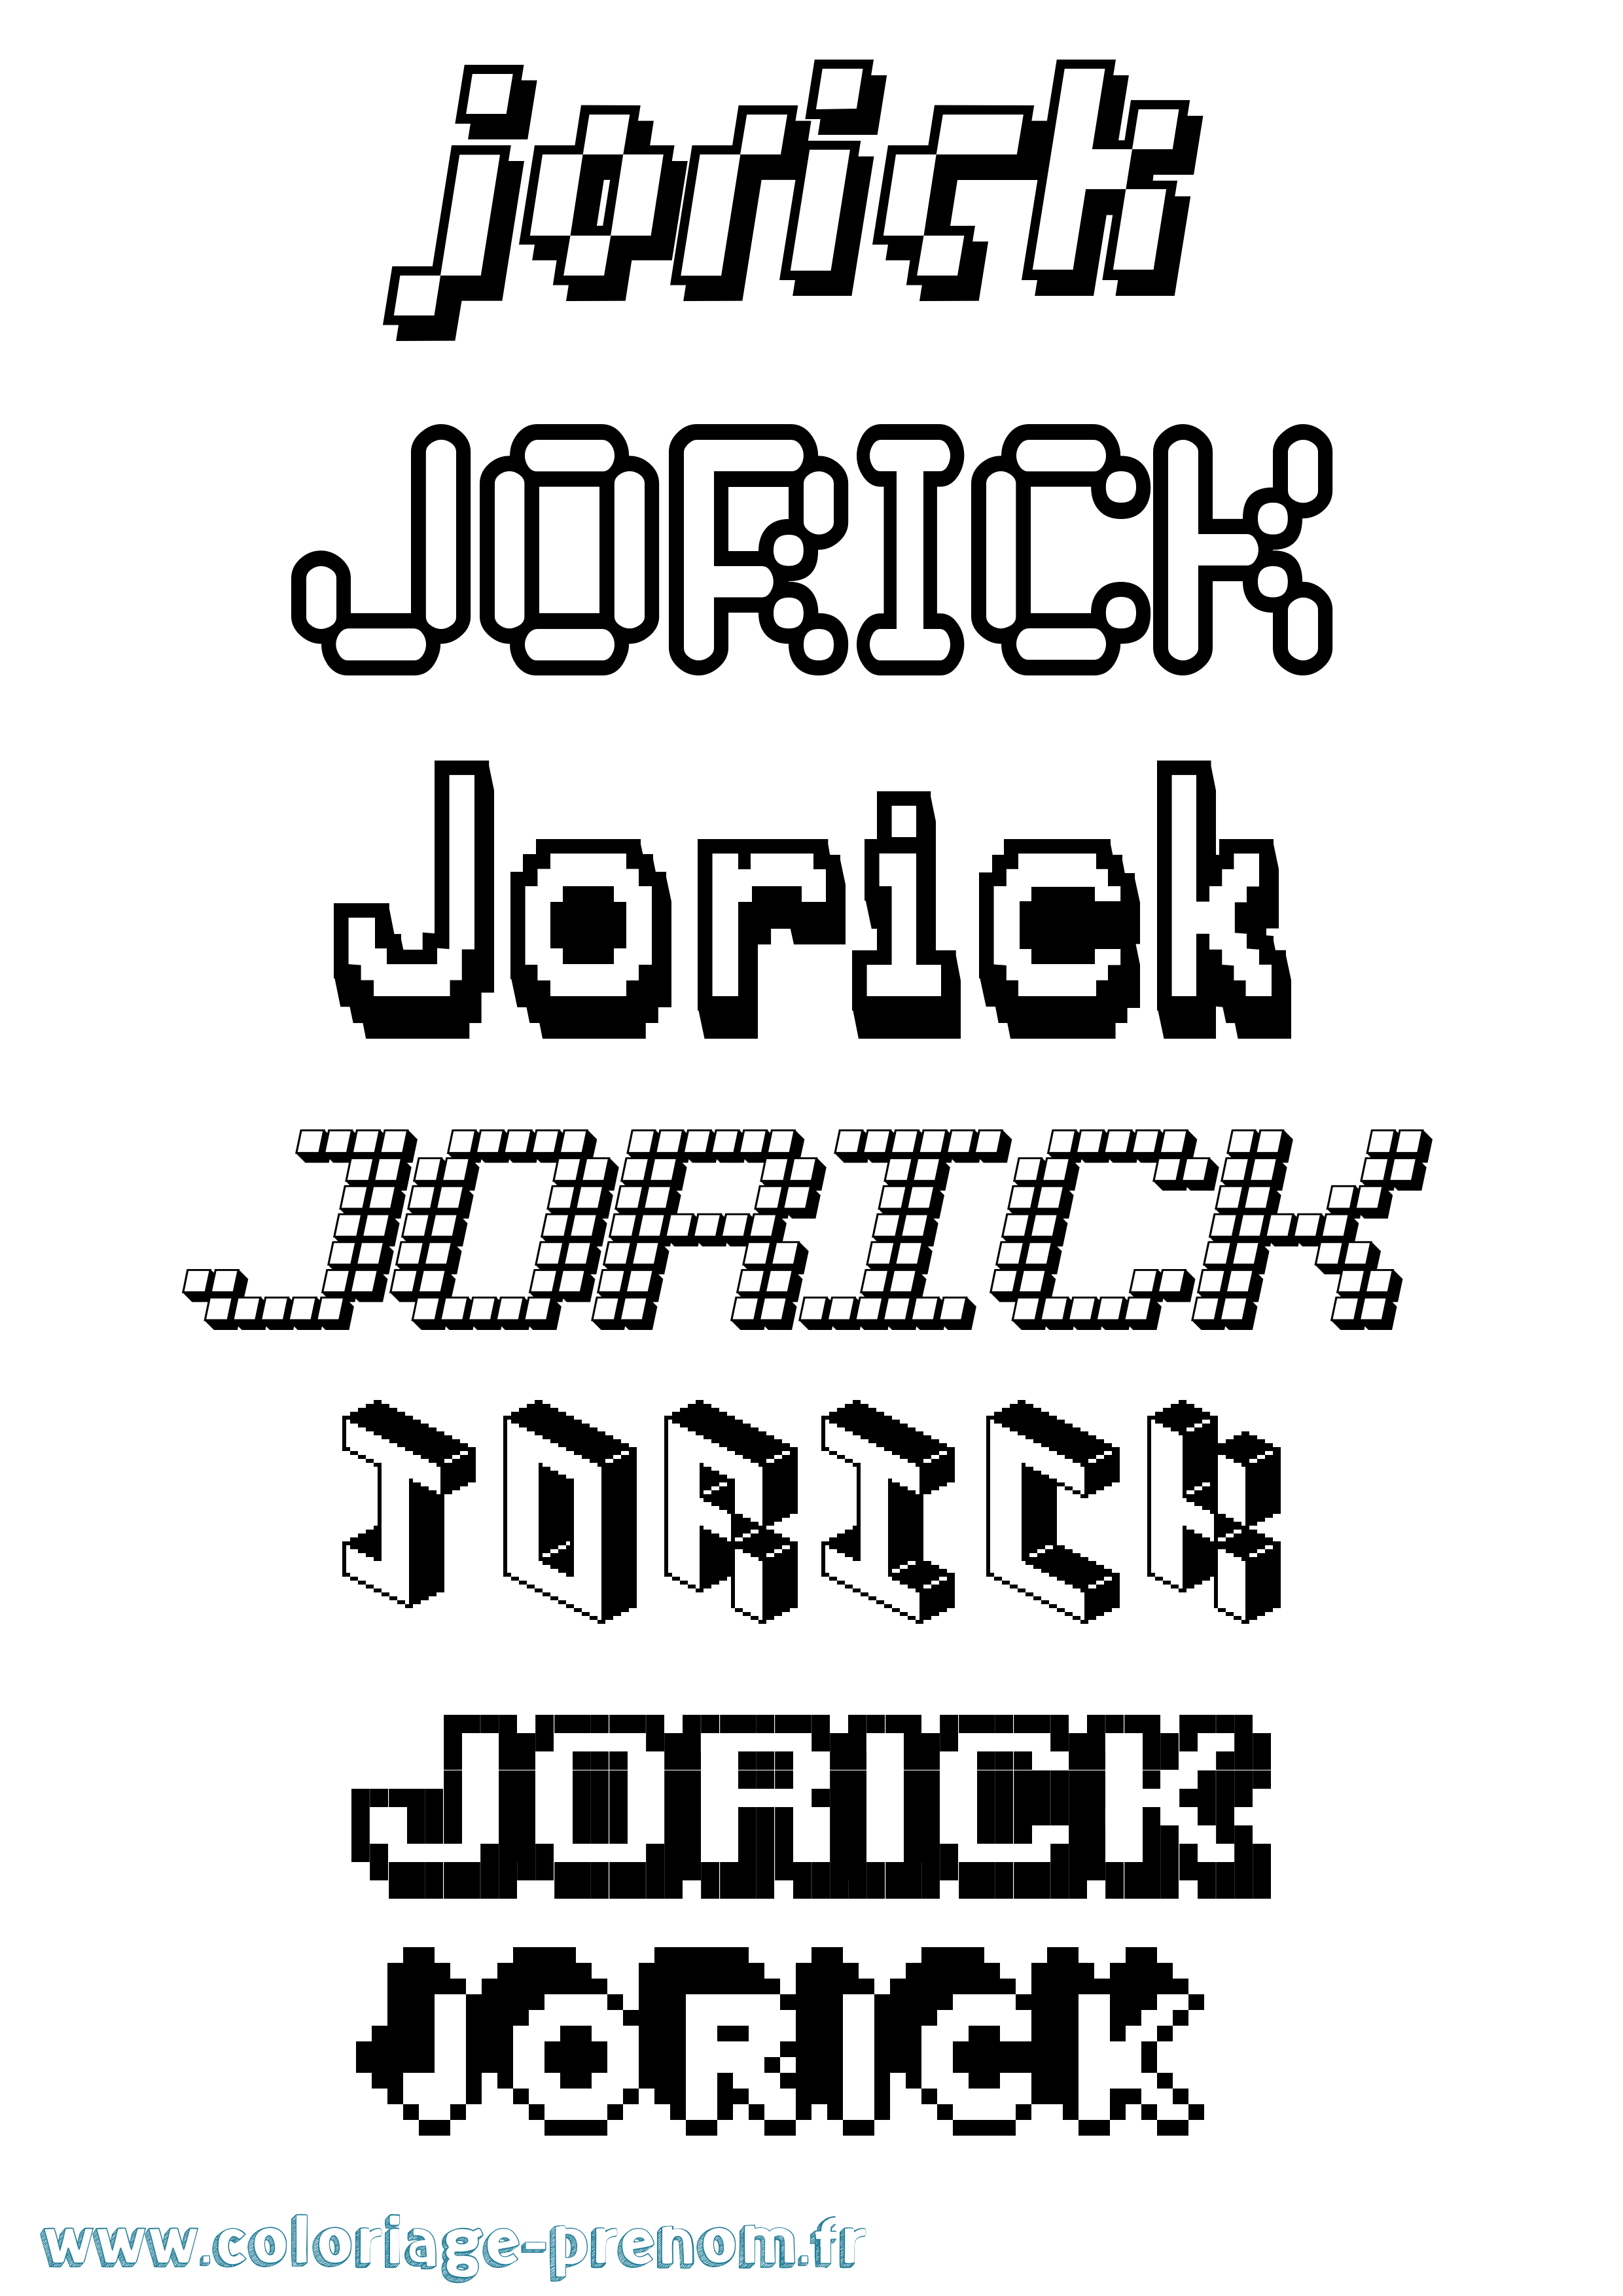 Coloriage prénom Jorick Pixel